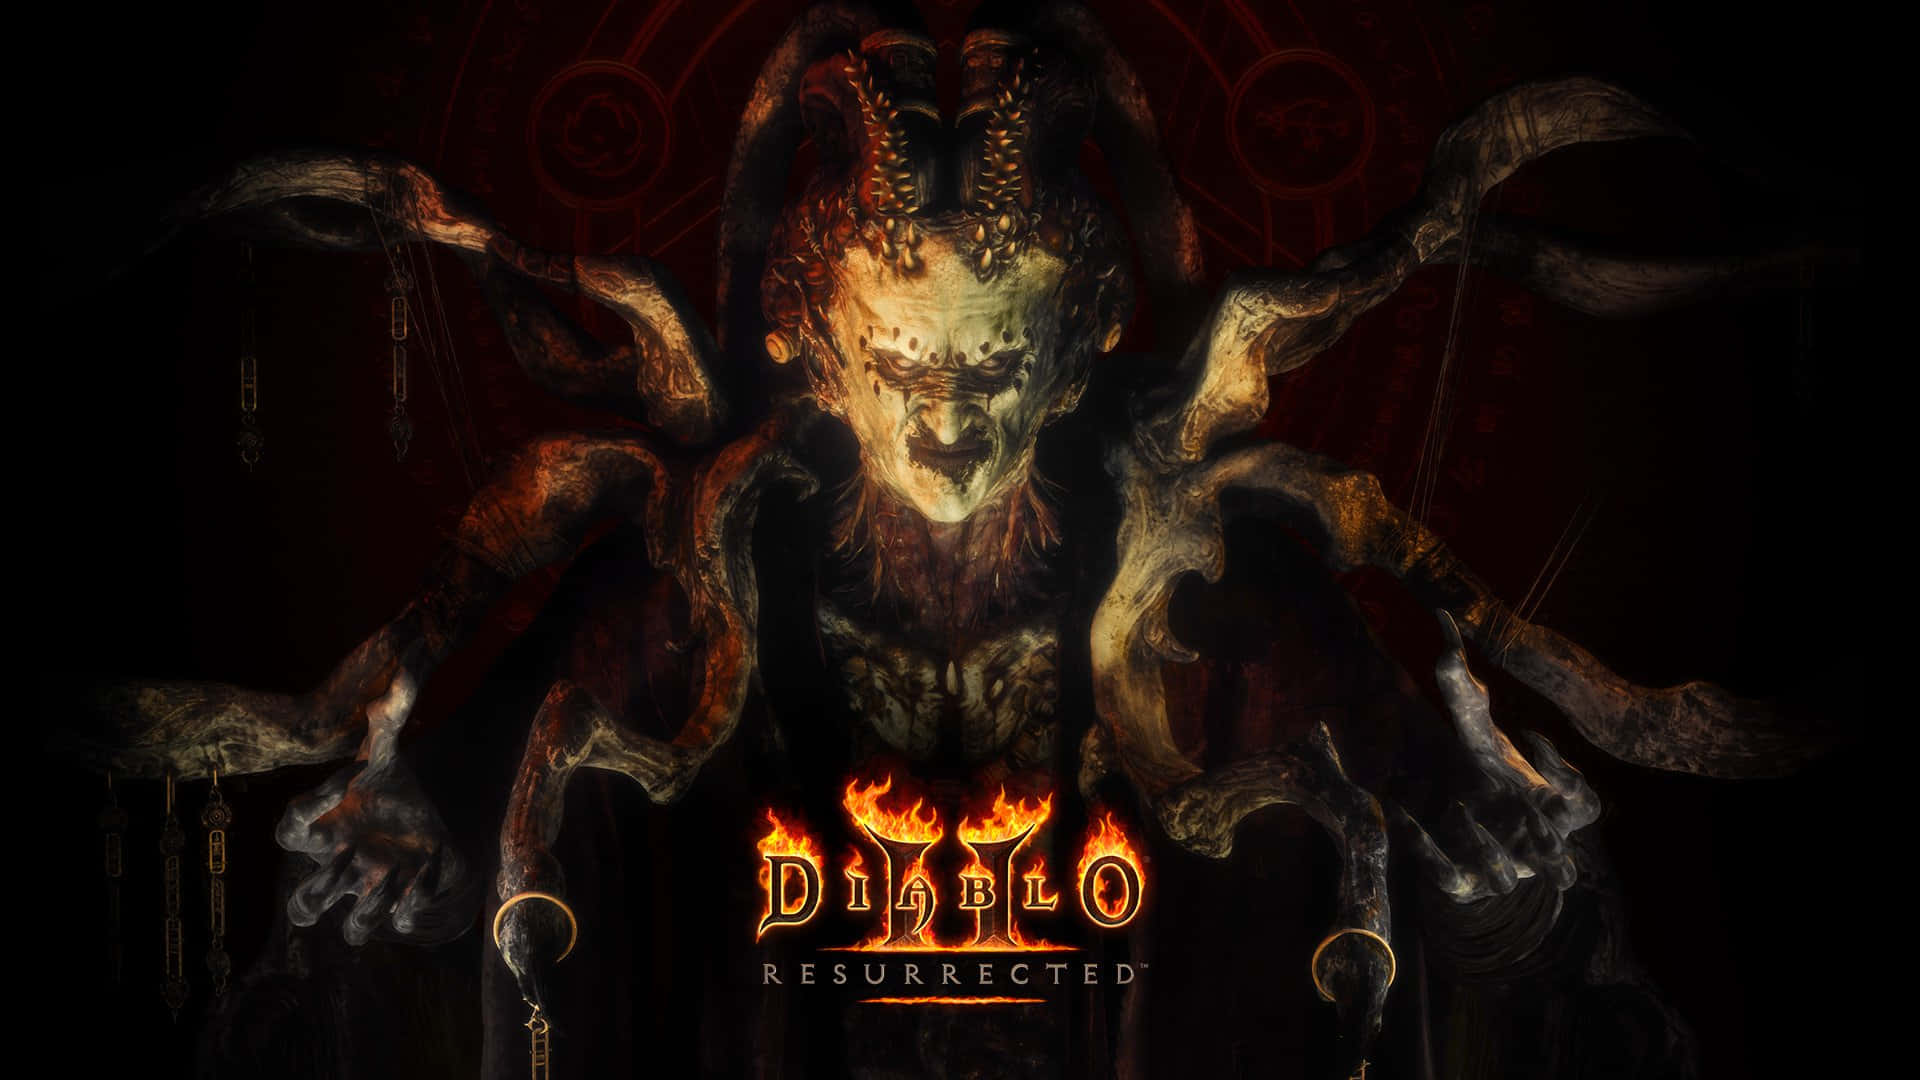 Diablo2: Resurrected Baal Wallpaper